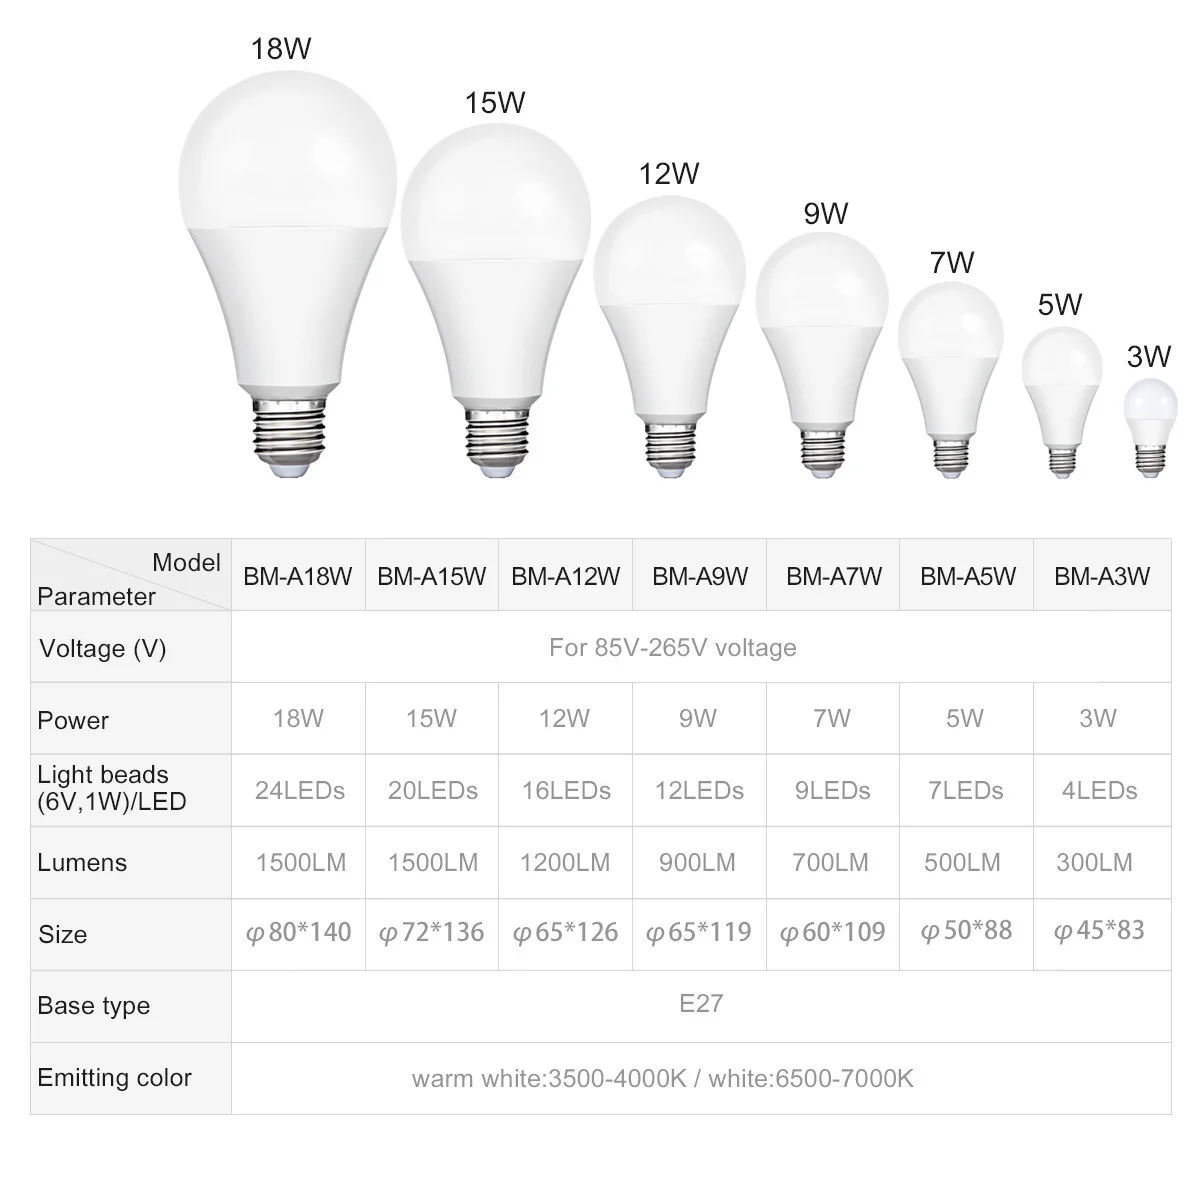 Smernit светодиодный светильник E27 AC85-265V 7 Вт 9 Вт 12 Вт 15 Вт 18 Вт белый 110 в 120 в 220 в 230 в 240 В в теплые энергосберегающие лампы лампада